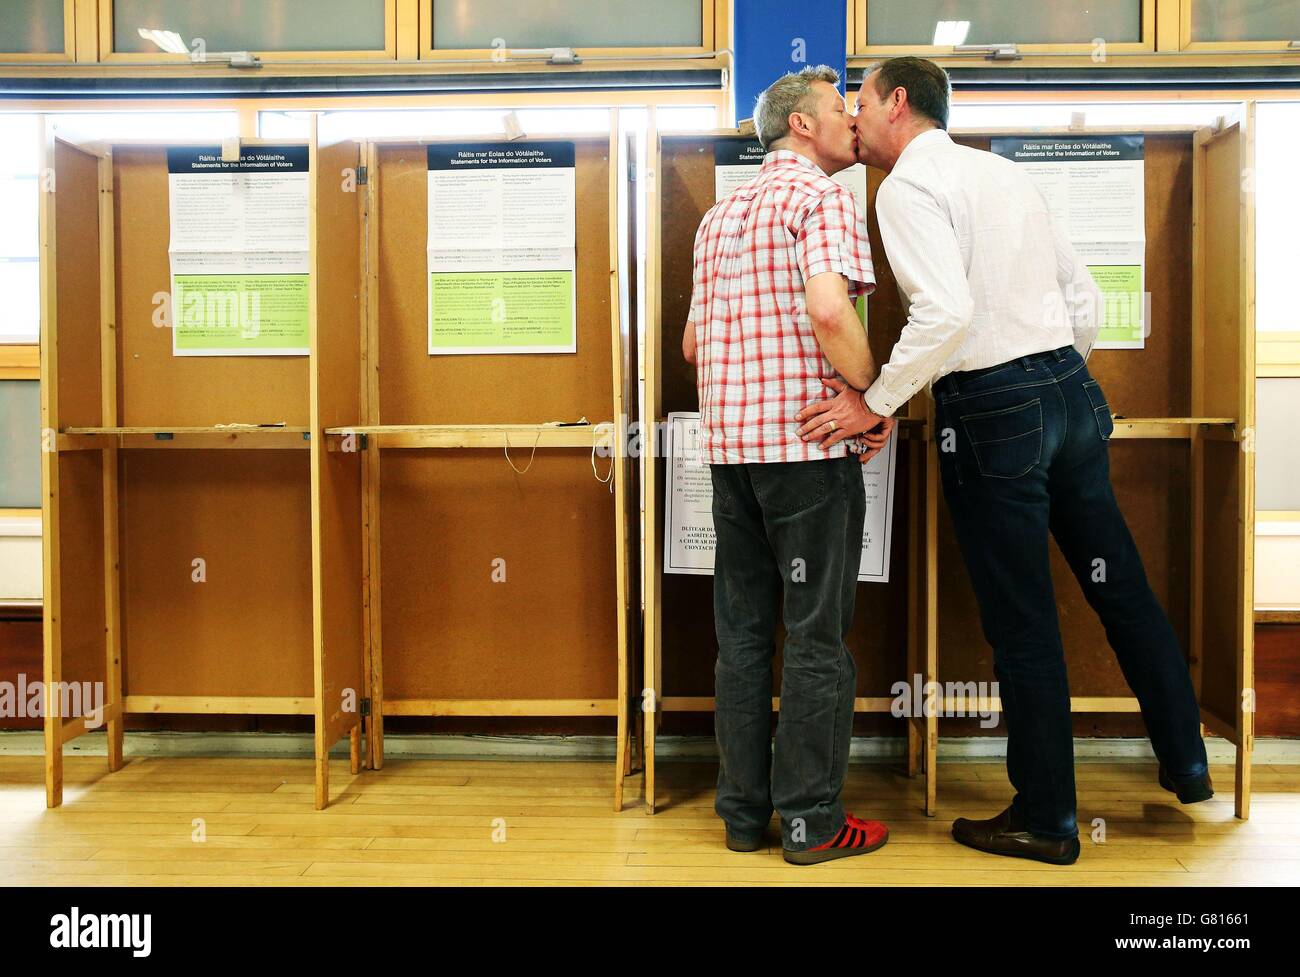 Vier-jährige Lebenspartner Paul Higgins (links) und Richard Lucey, die seit 19 Jahren in einer Beziehung stehen, bereiten sich darauf vor, in ihrem Wahllokal in Cabra, Dublin, ihre Stimme für das Referendum über die Homo-Ehe abzugeben. Stockfoto